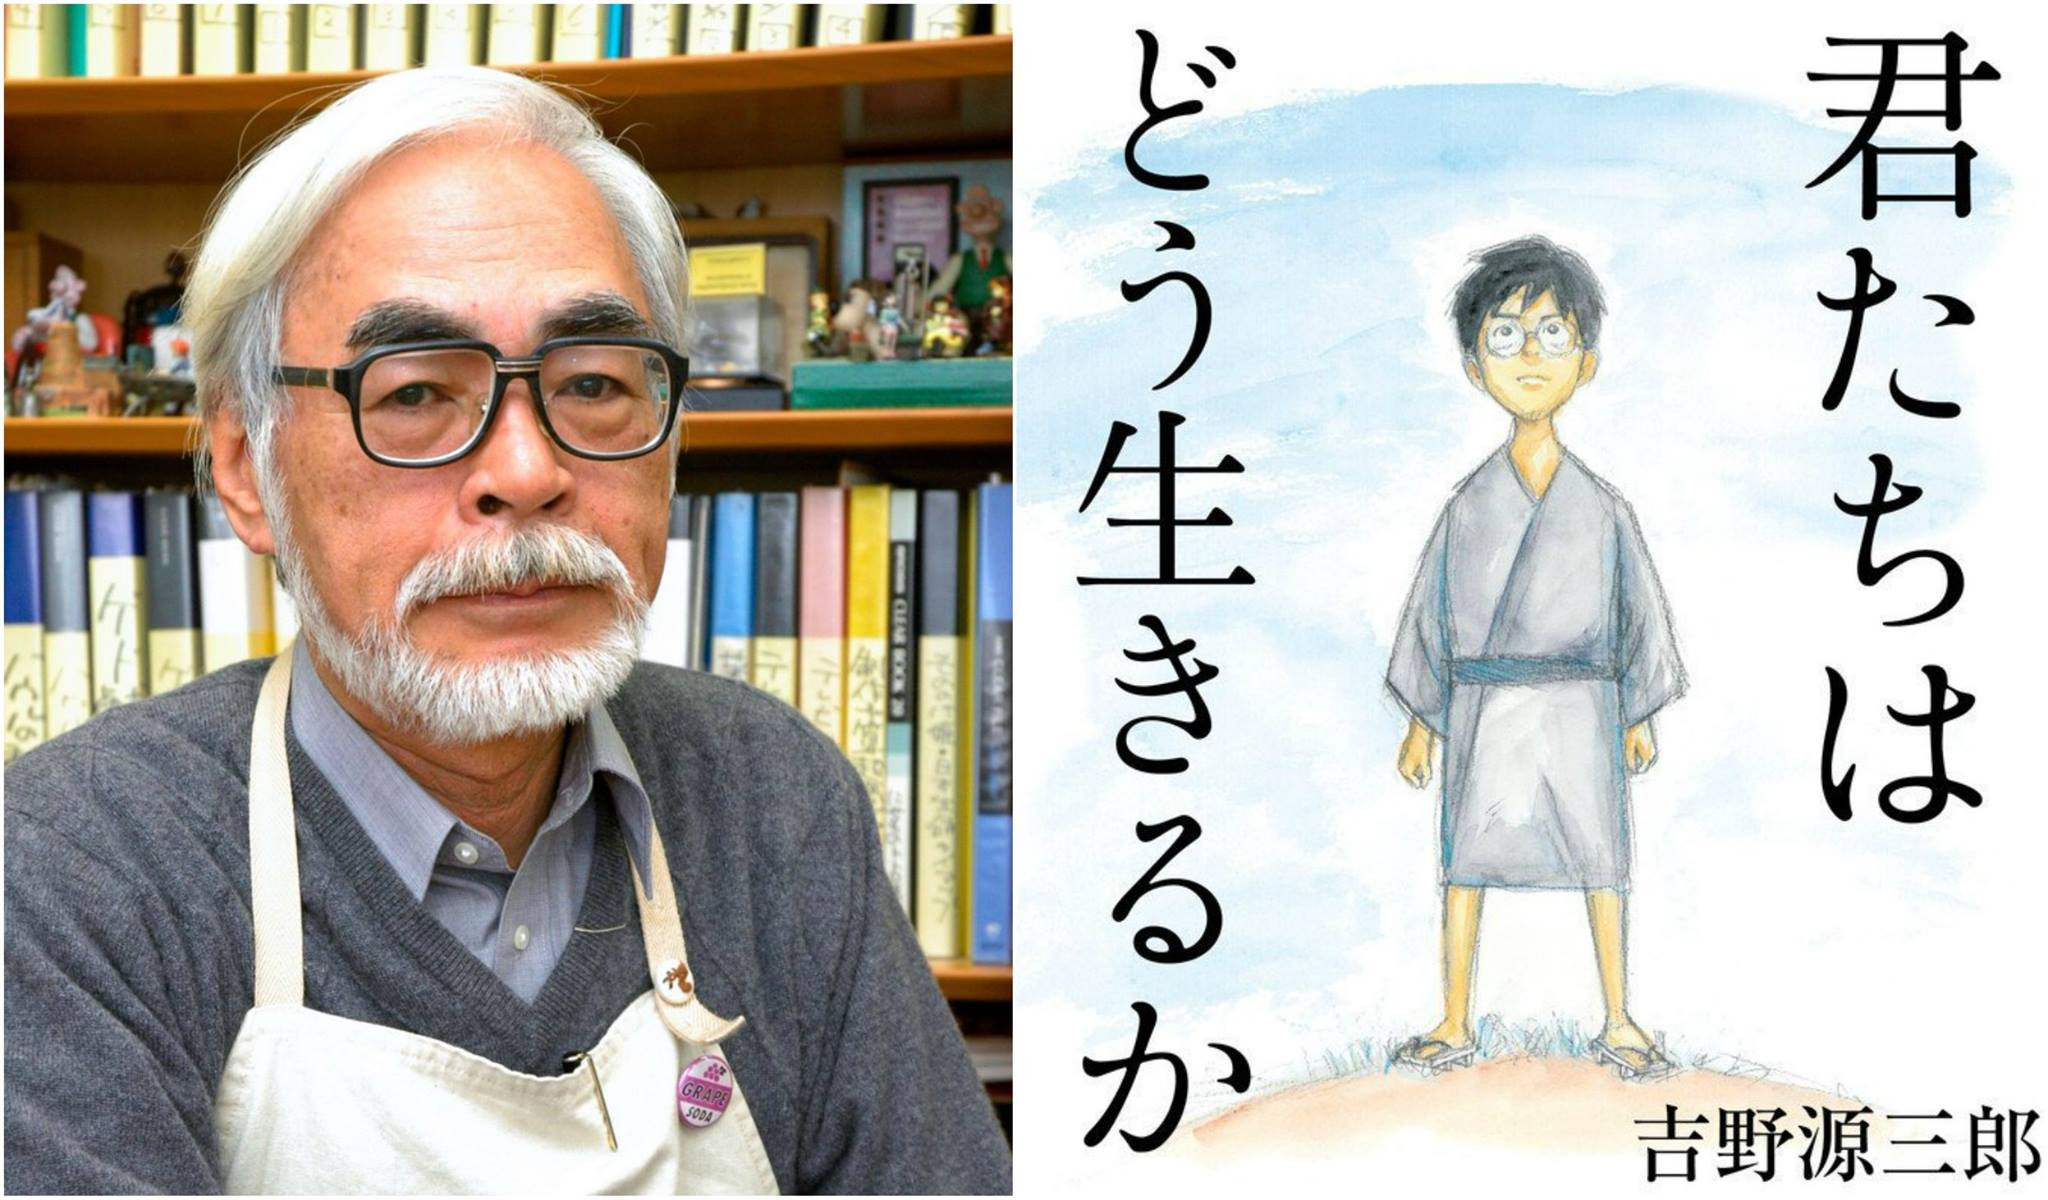 Naslednji film Miyazaki Hayaa vsebuje že 36 minut gradiva kljub koronavirusu